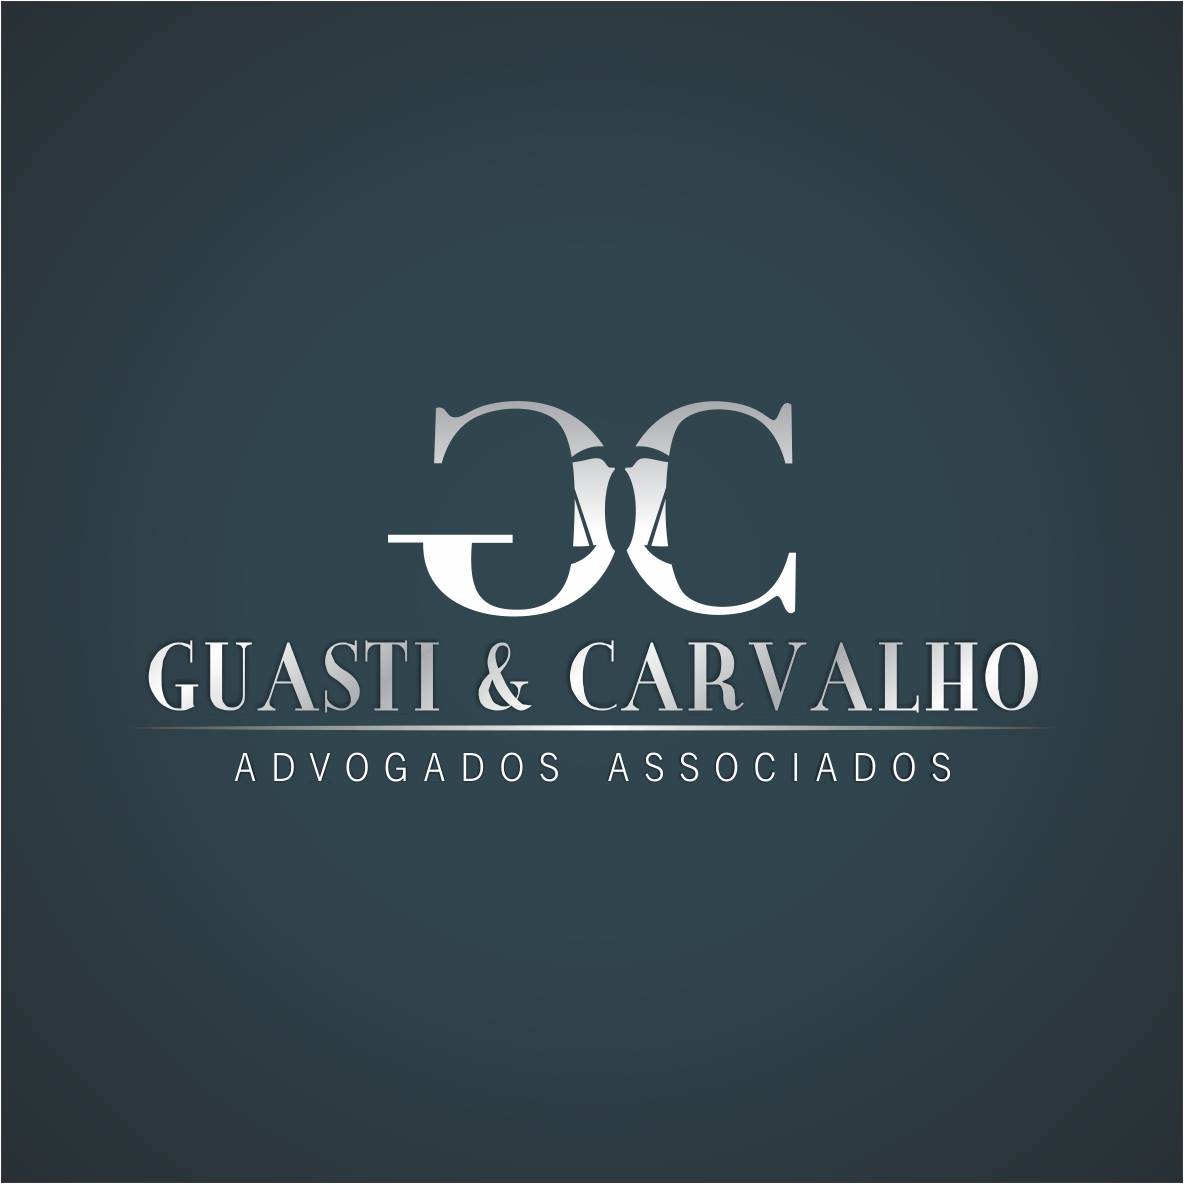 Dr. Benito Carvalho - Guasti & Carvalho Advogados Associados